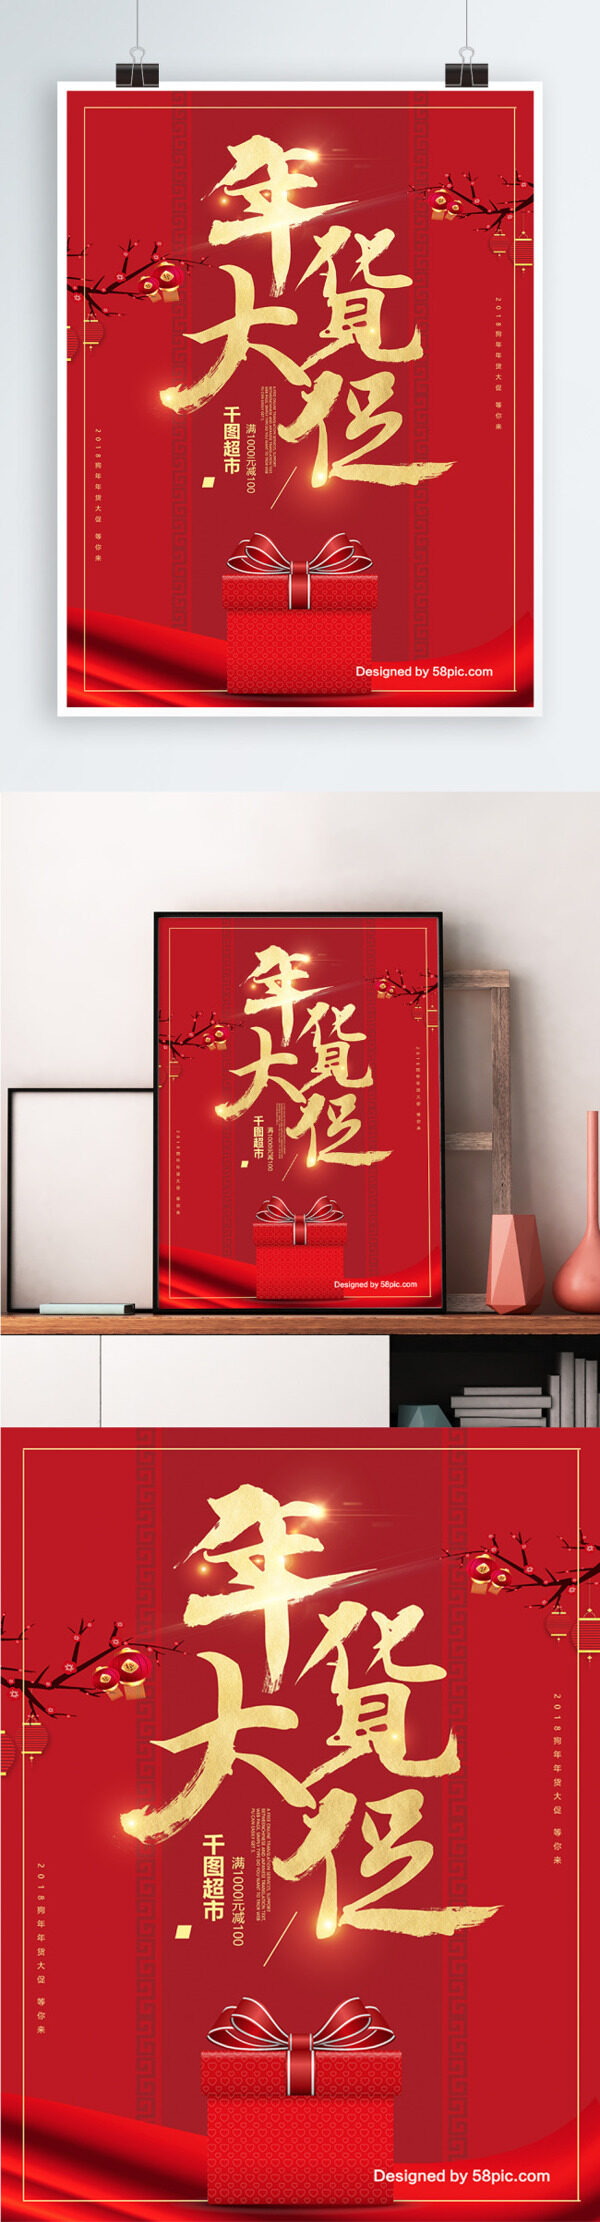 中国风喜庆年货大促海报设计